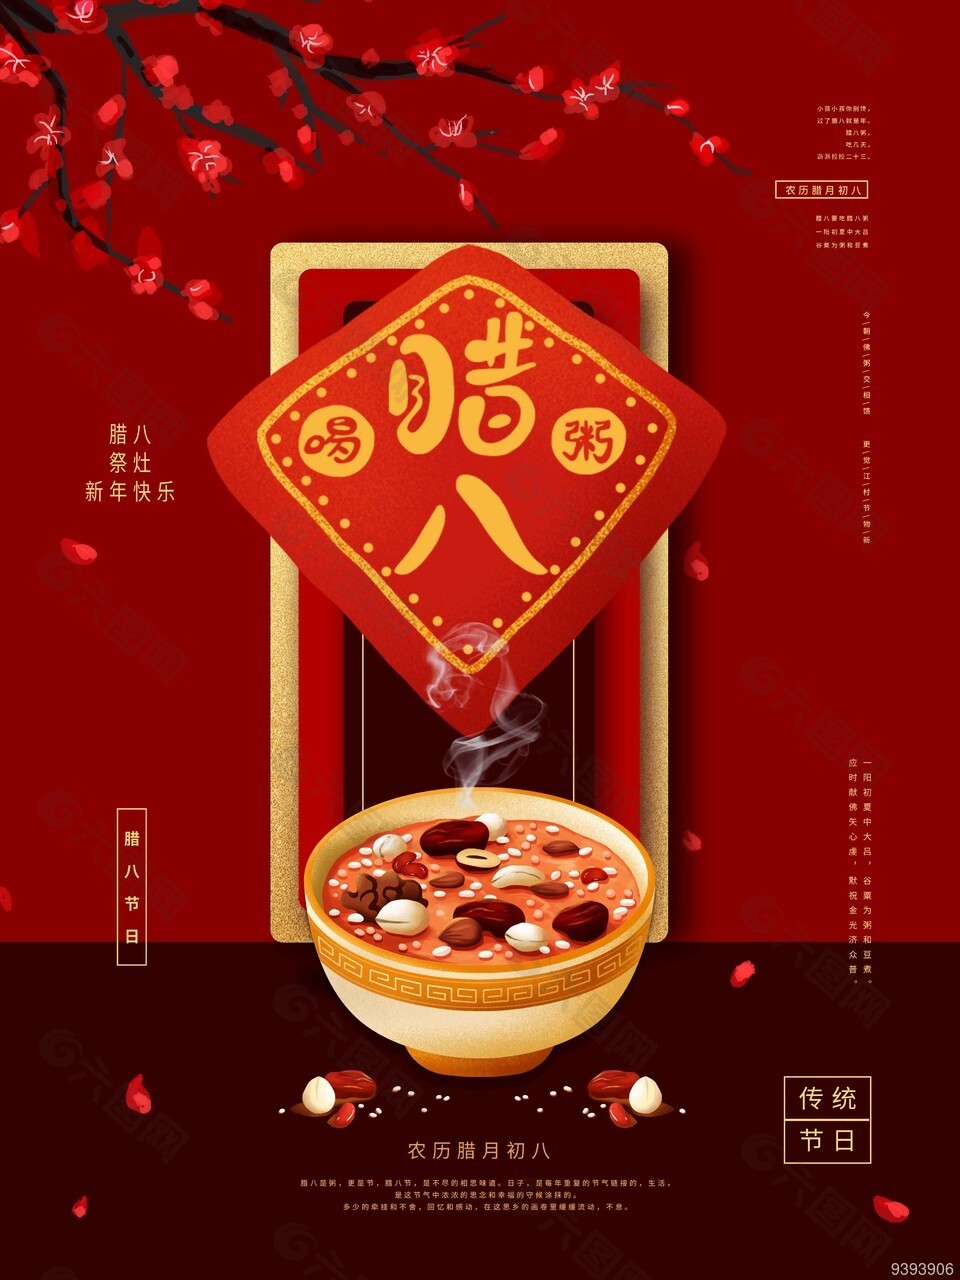 中国红农历腊月初八节日海报下载